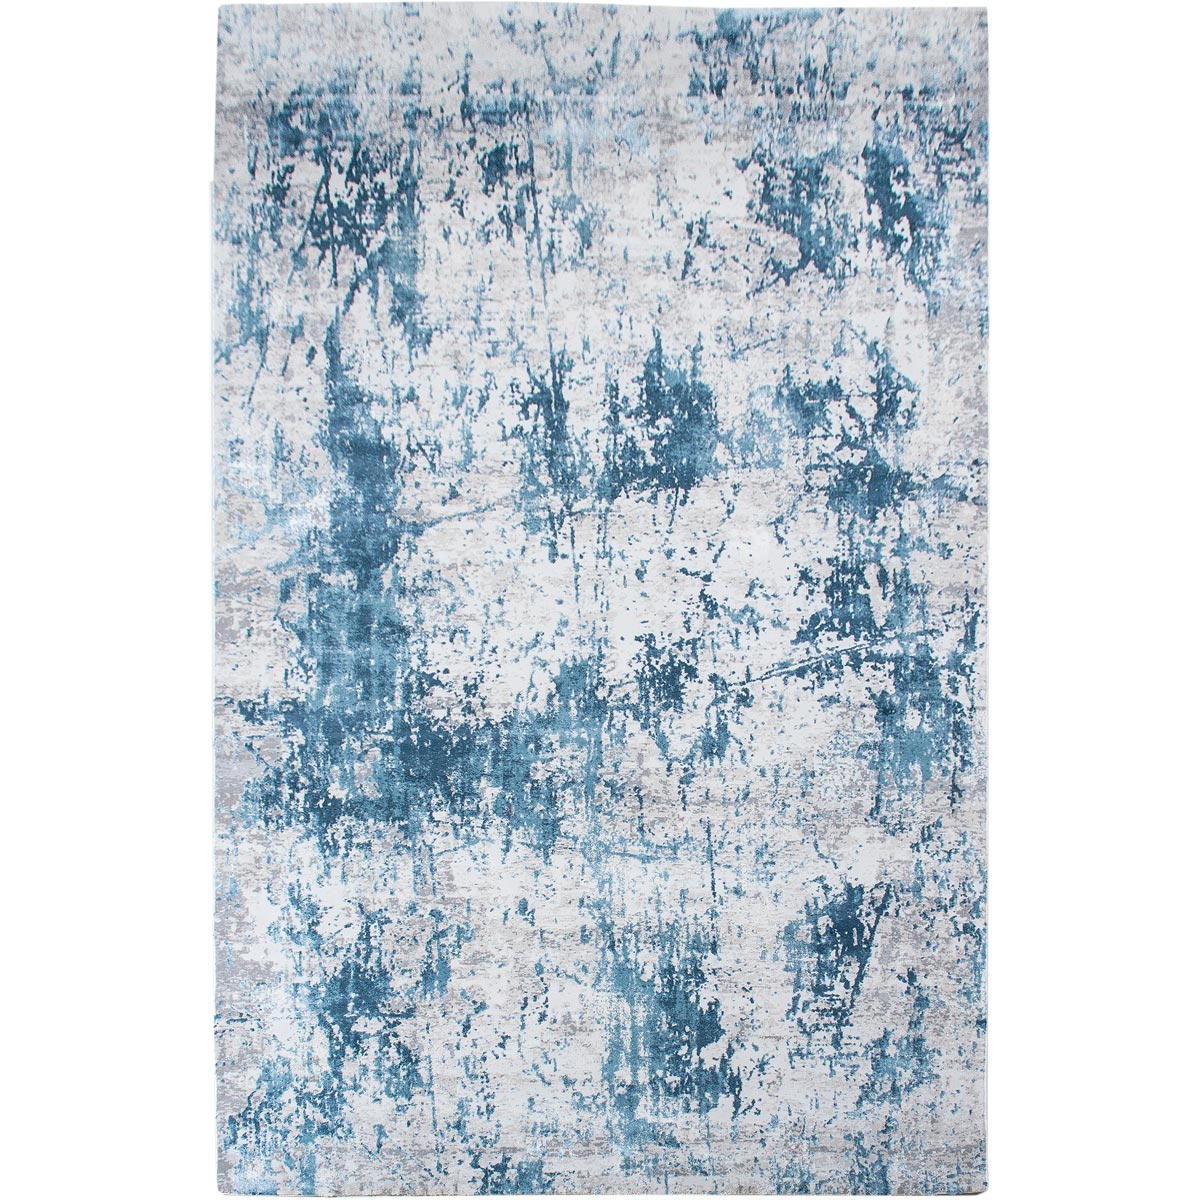 שטיח מילאנו 01 אפור/כחול | השטיח האדום